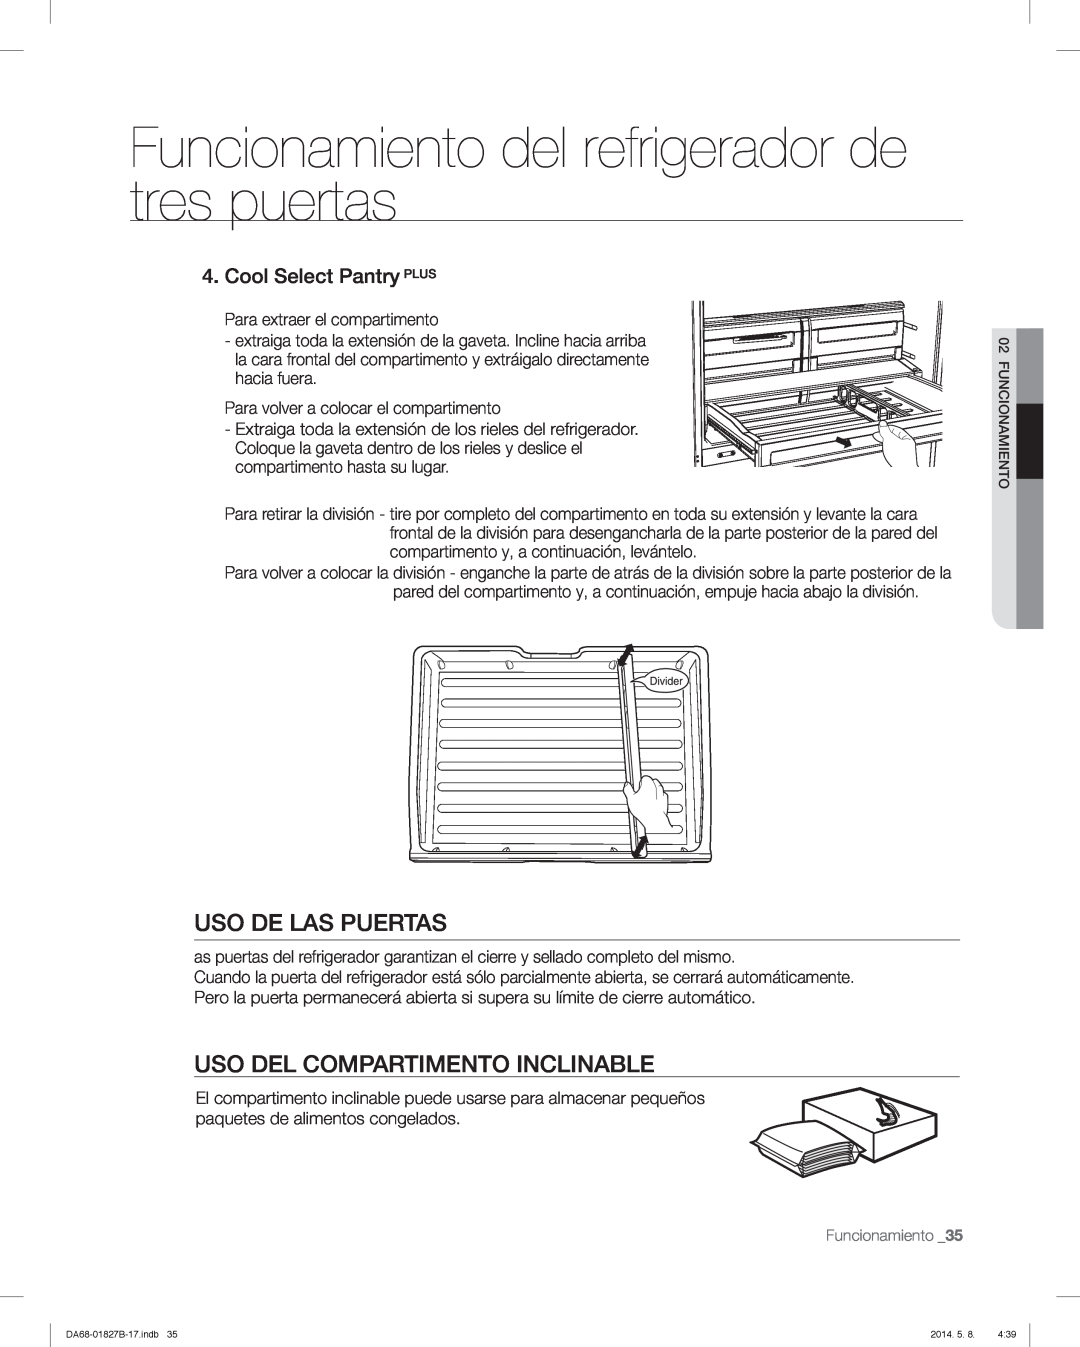 Samsung RFG237AAWP Uso De Las Puertas, Uso Del Compartimento Inclinable, Funcionamiento del refrigerador de tres puertas 